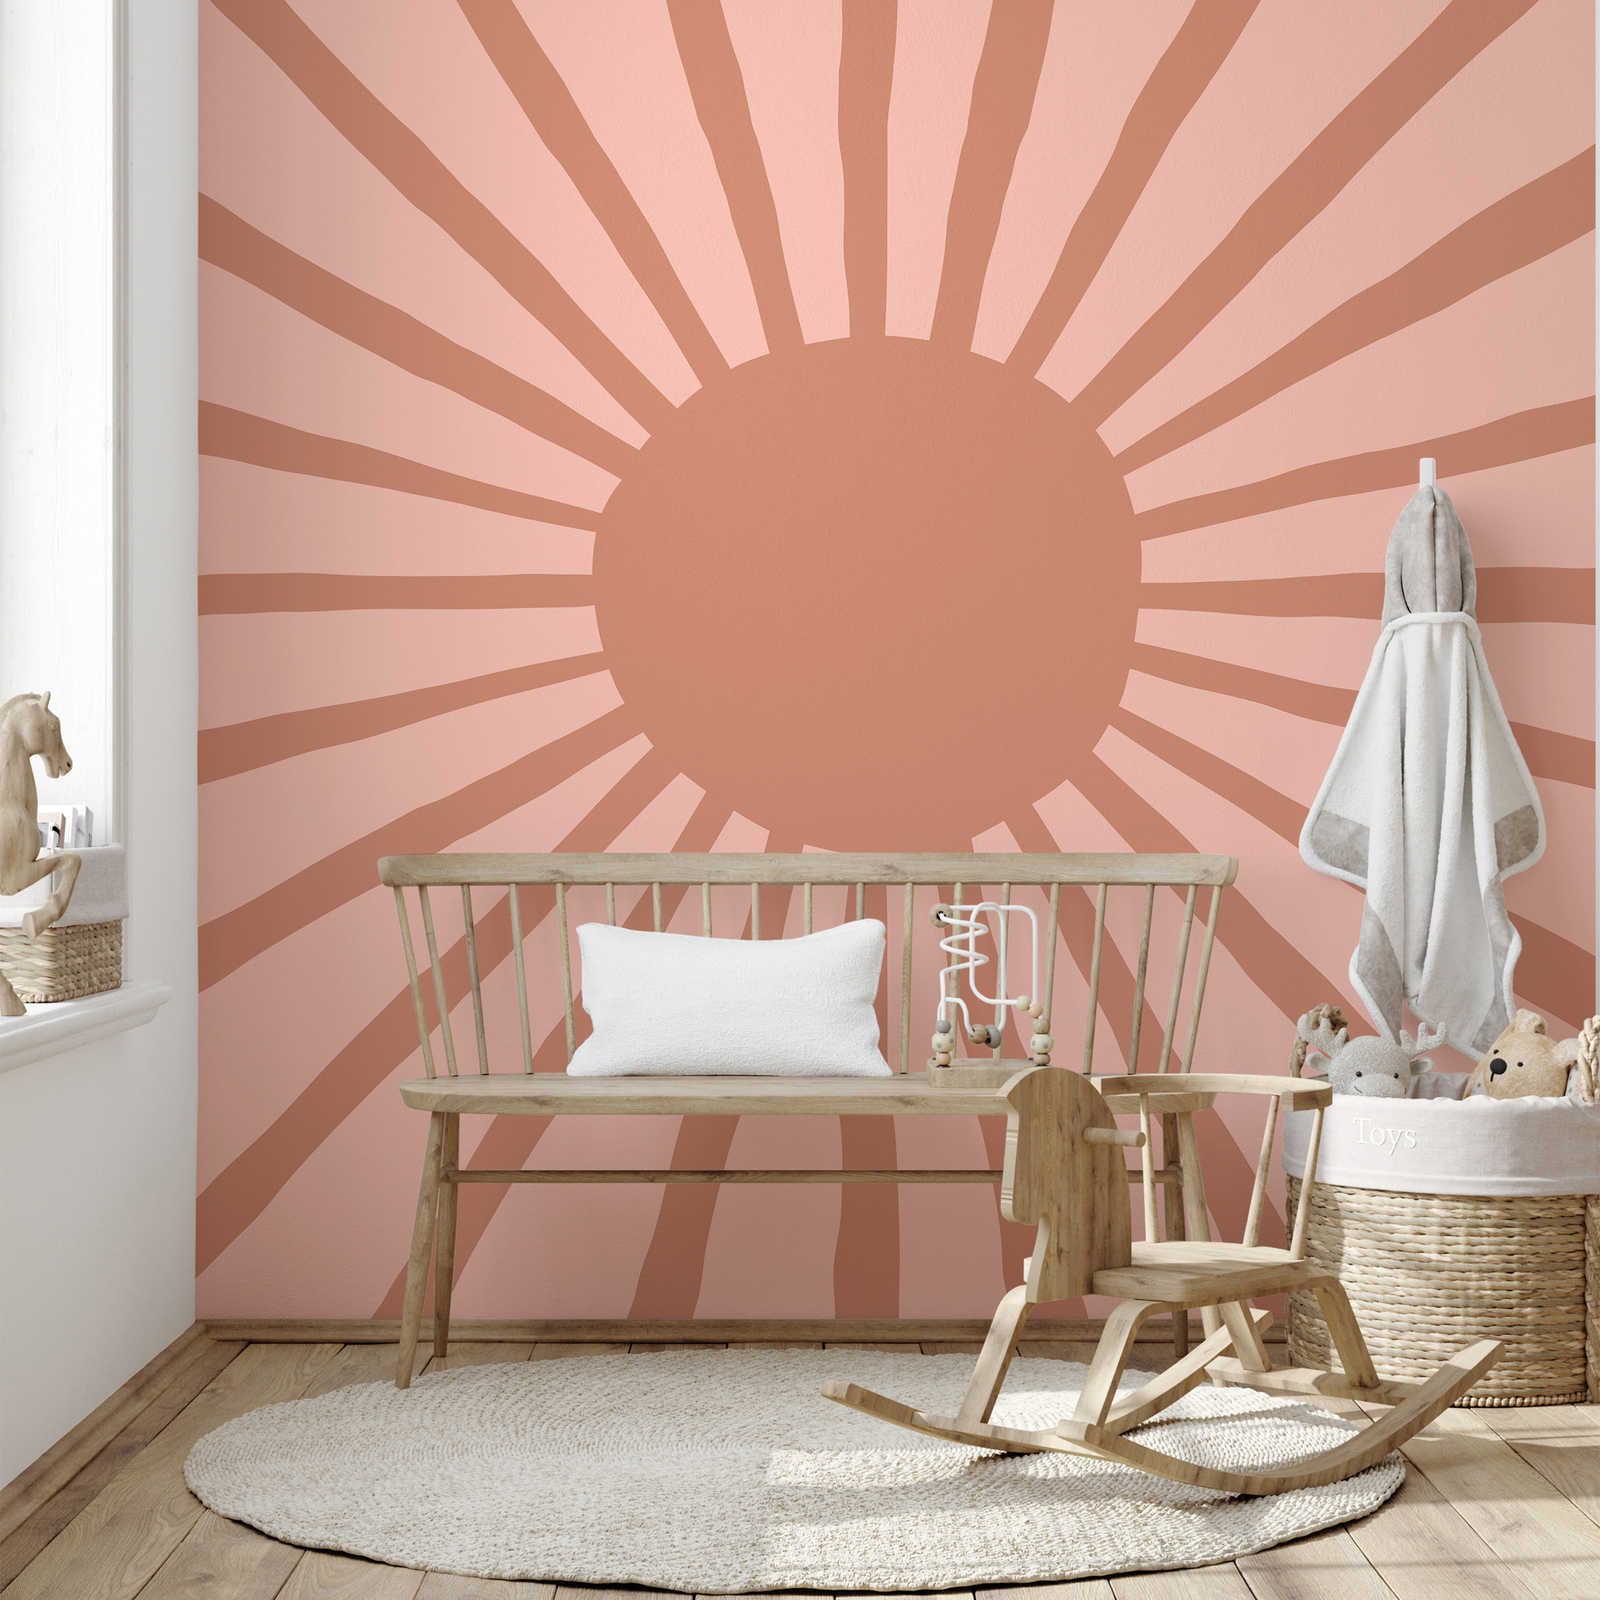 Fototapete abstrakte Sonne im gemalten Stil – Glattes & mattes Vlies
